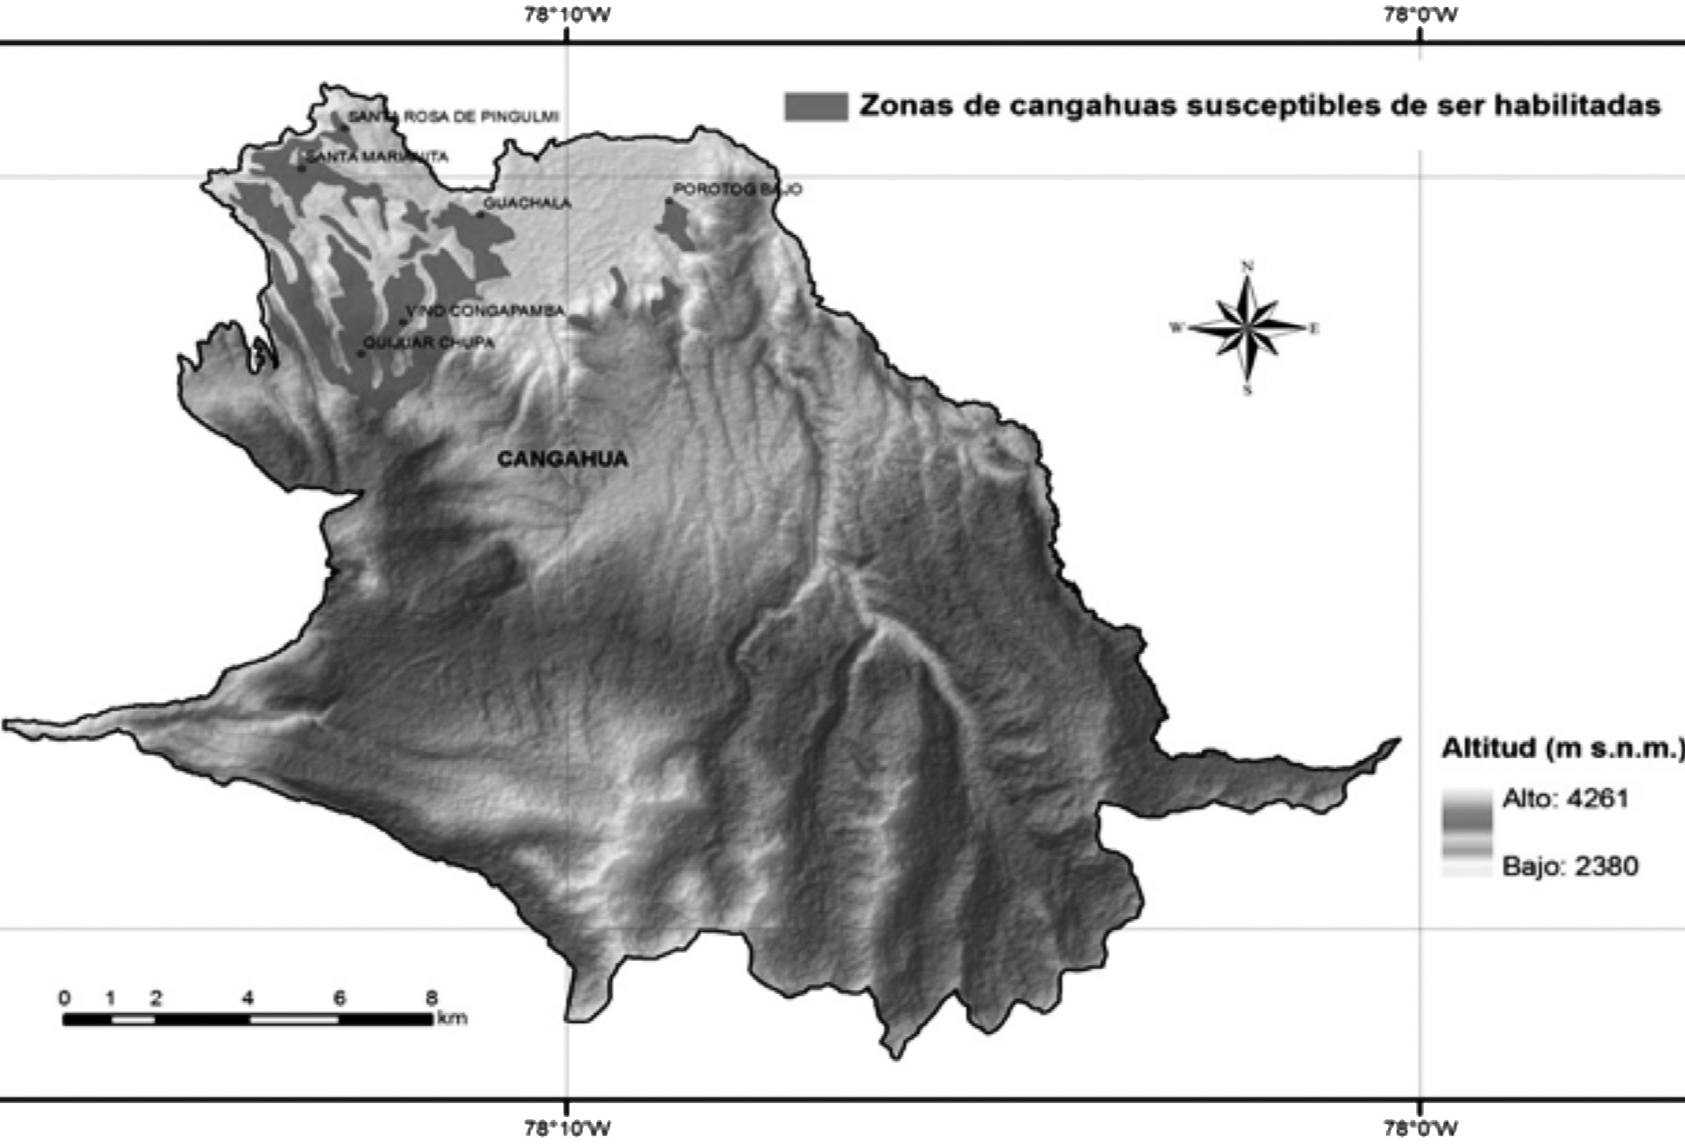  Ubicación geográfica de las zonas con cangahuas susceptibles de ser habilitadas.